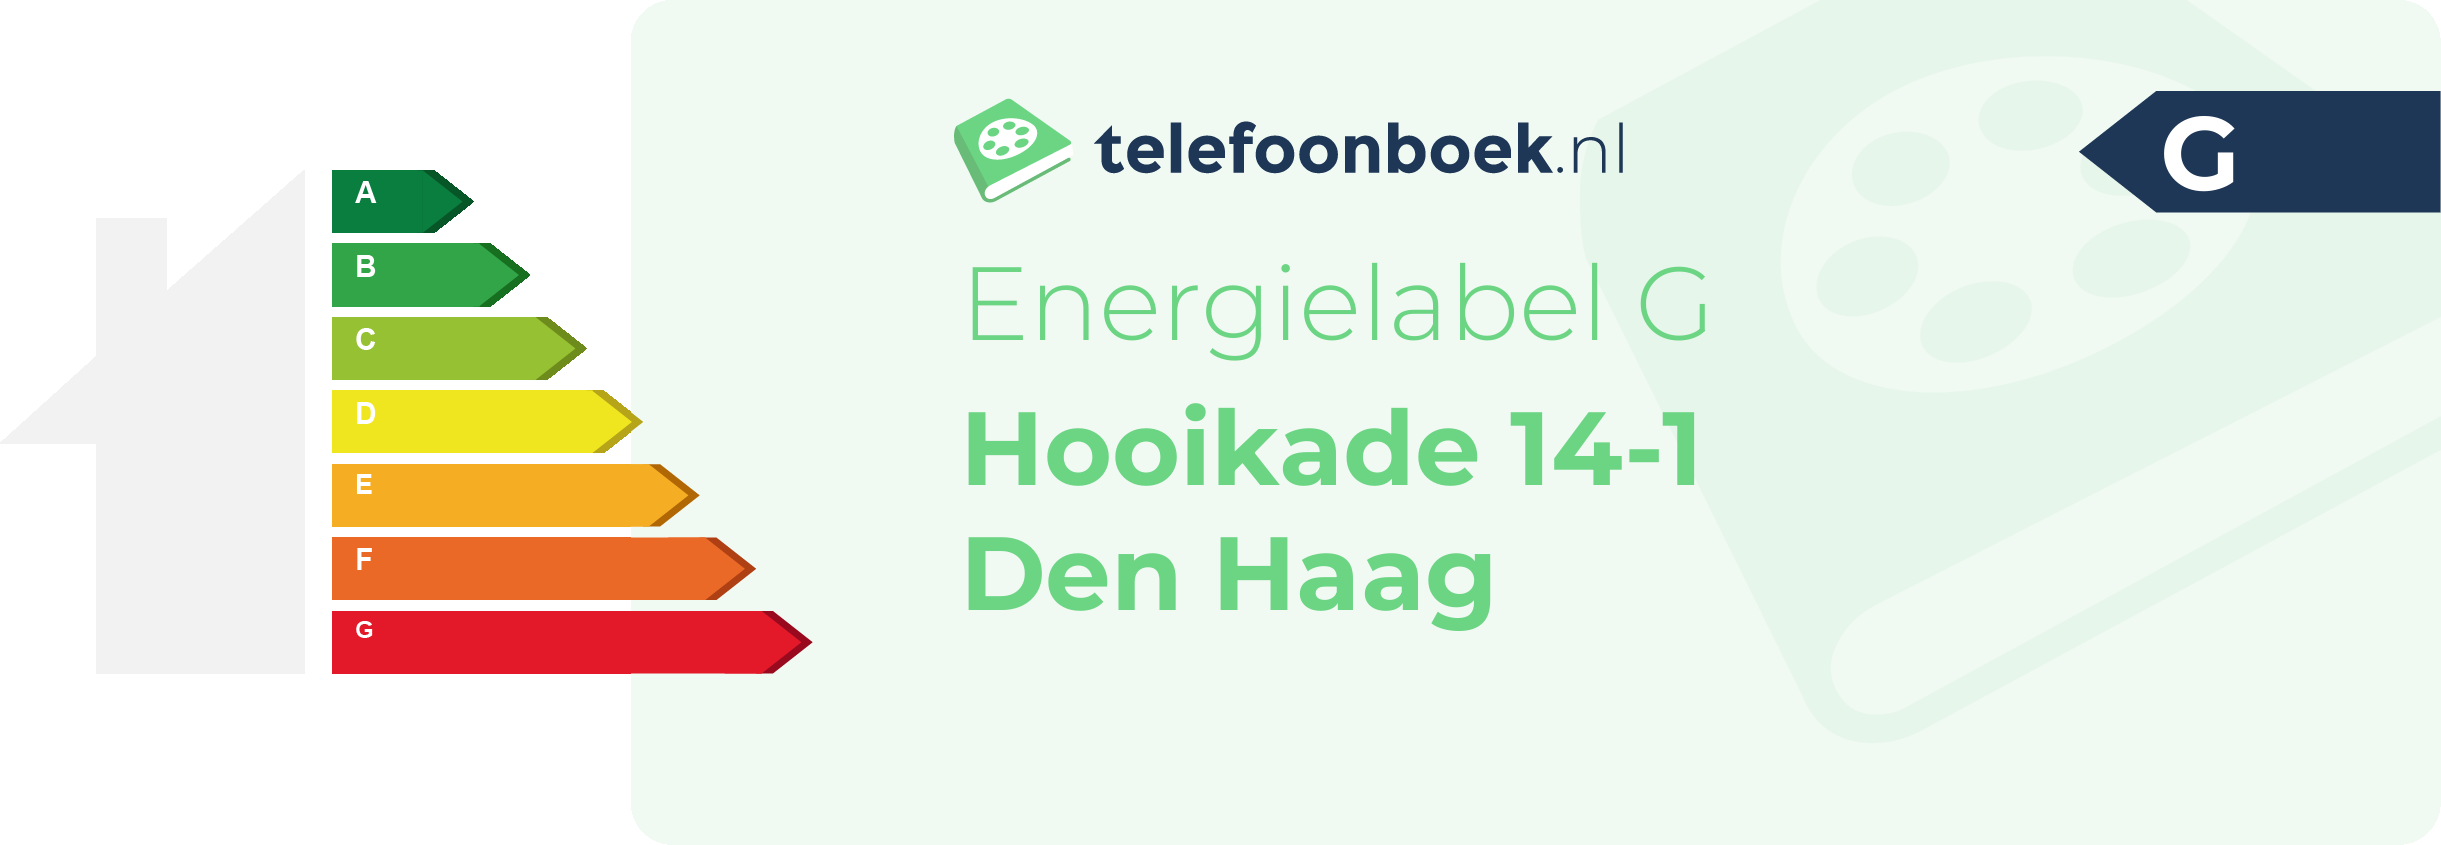 Energielabel Hooikade 14-1 Den Haag